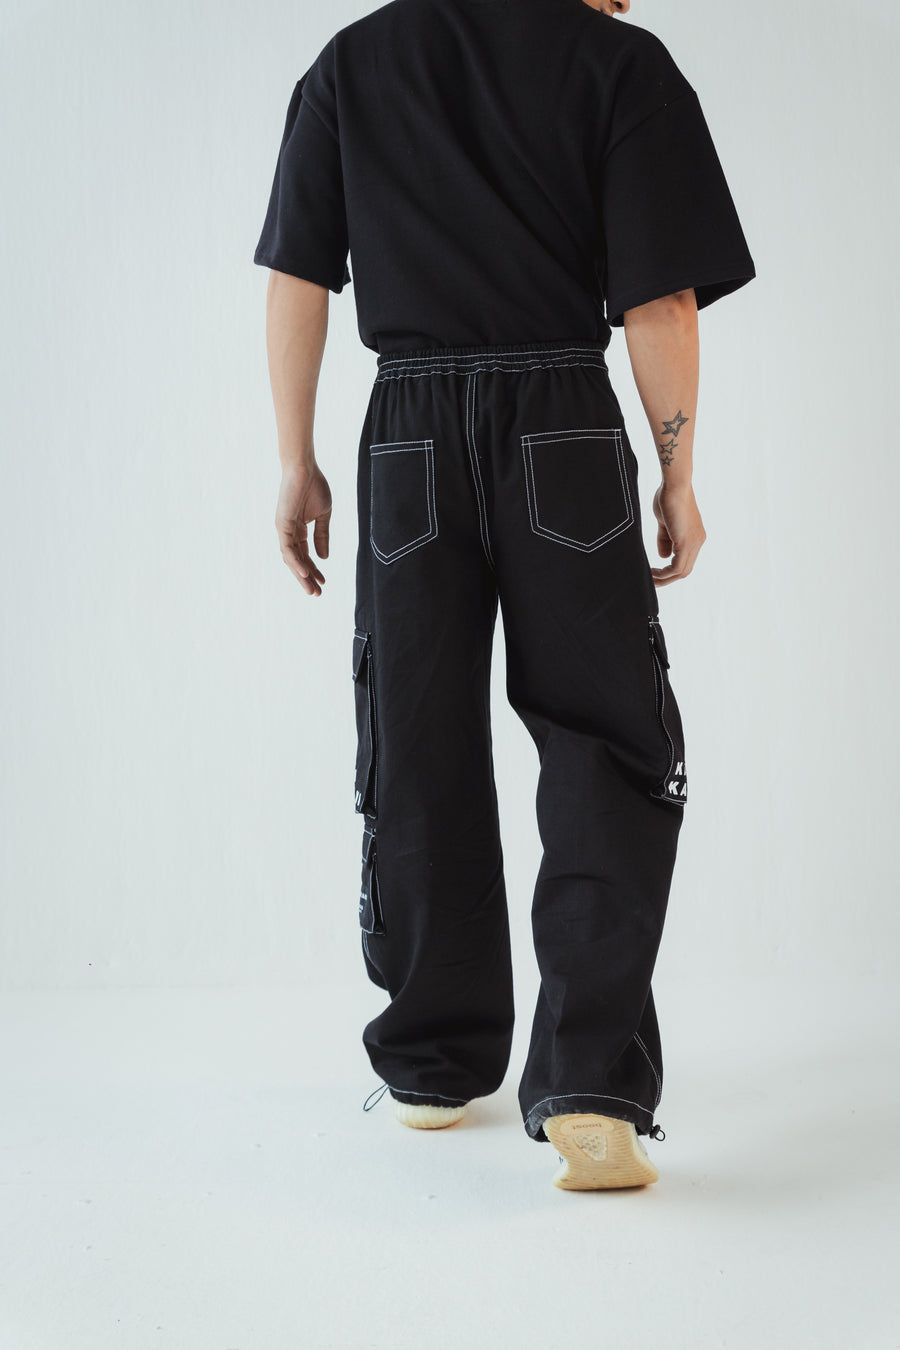 Black Contrast Stitch Carpenter Shirt and Cargo Pants Clothing Set   Fugazee  FUGAZEE